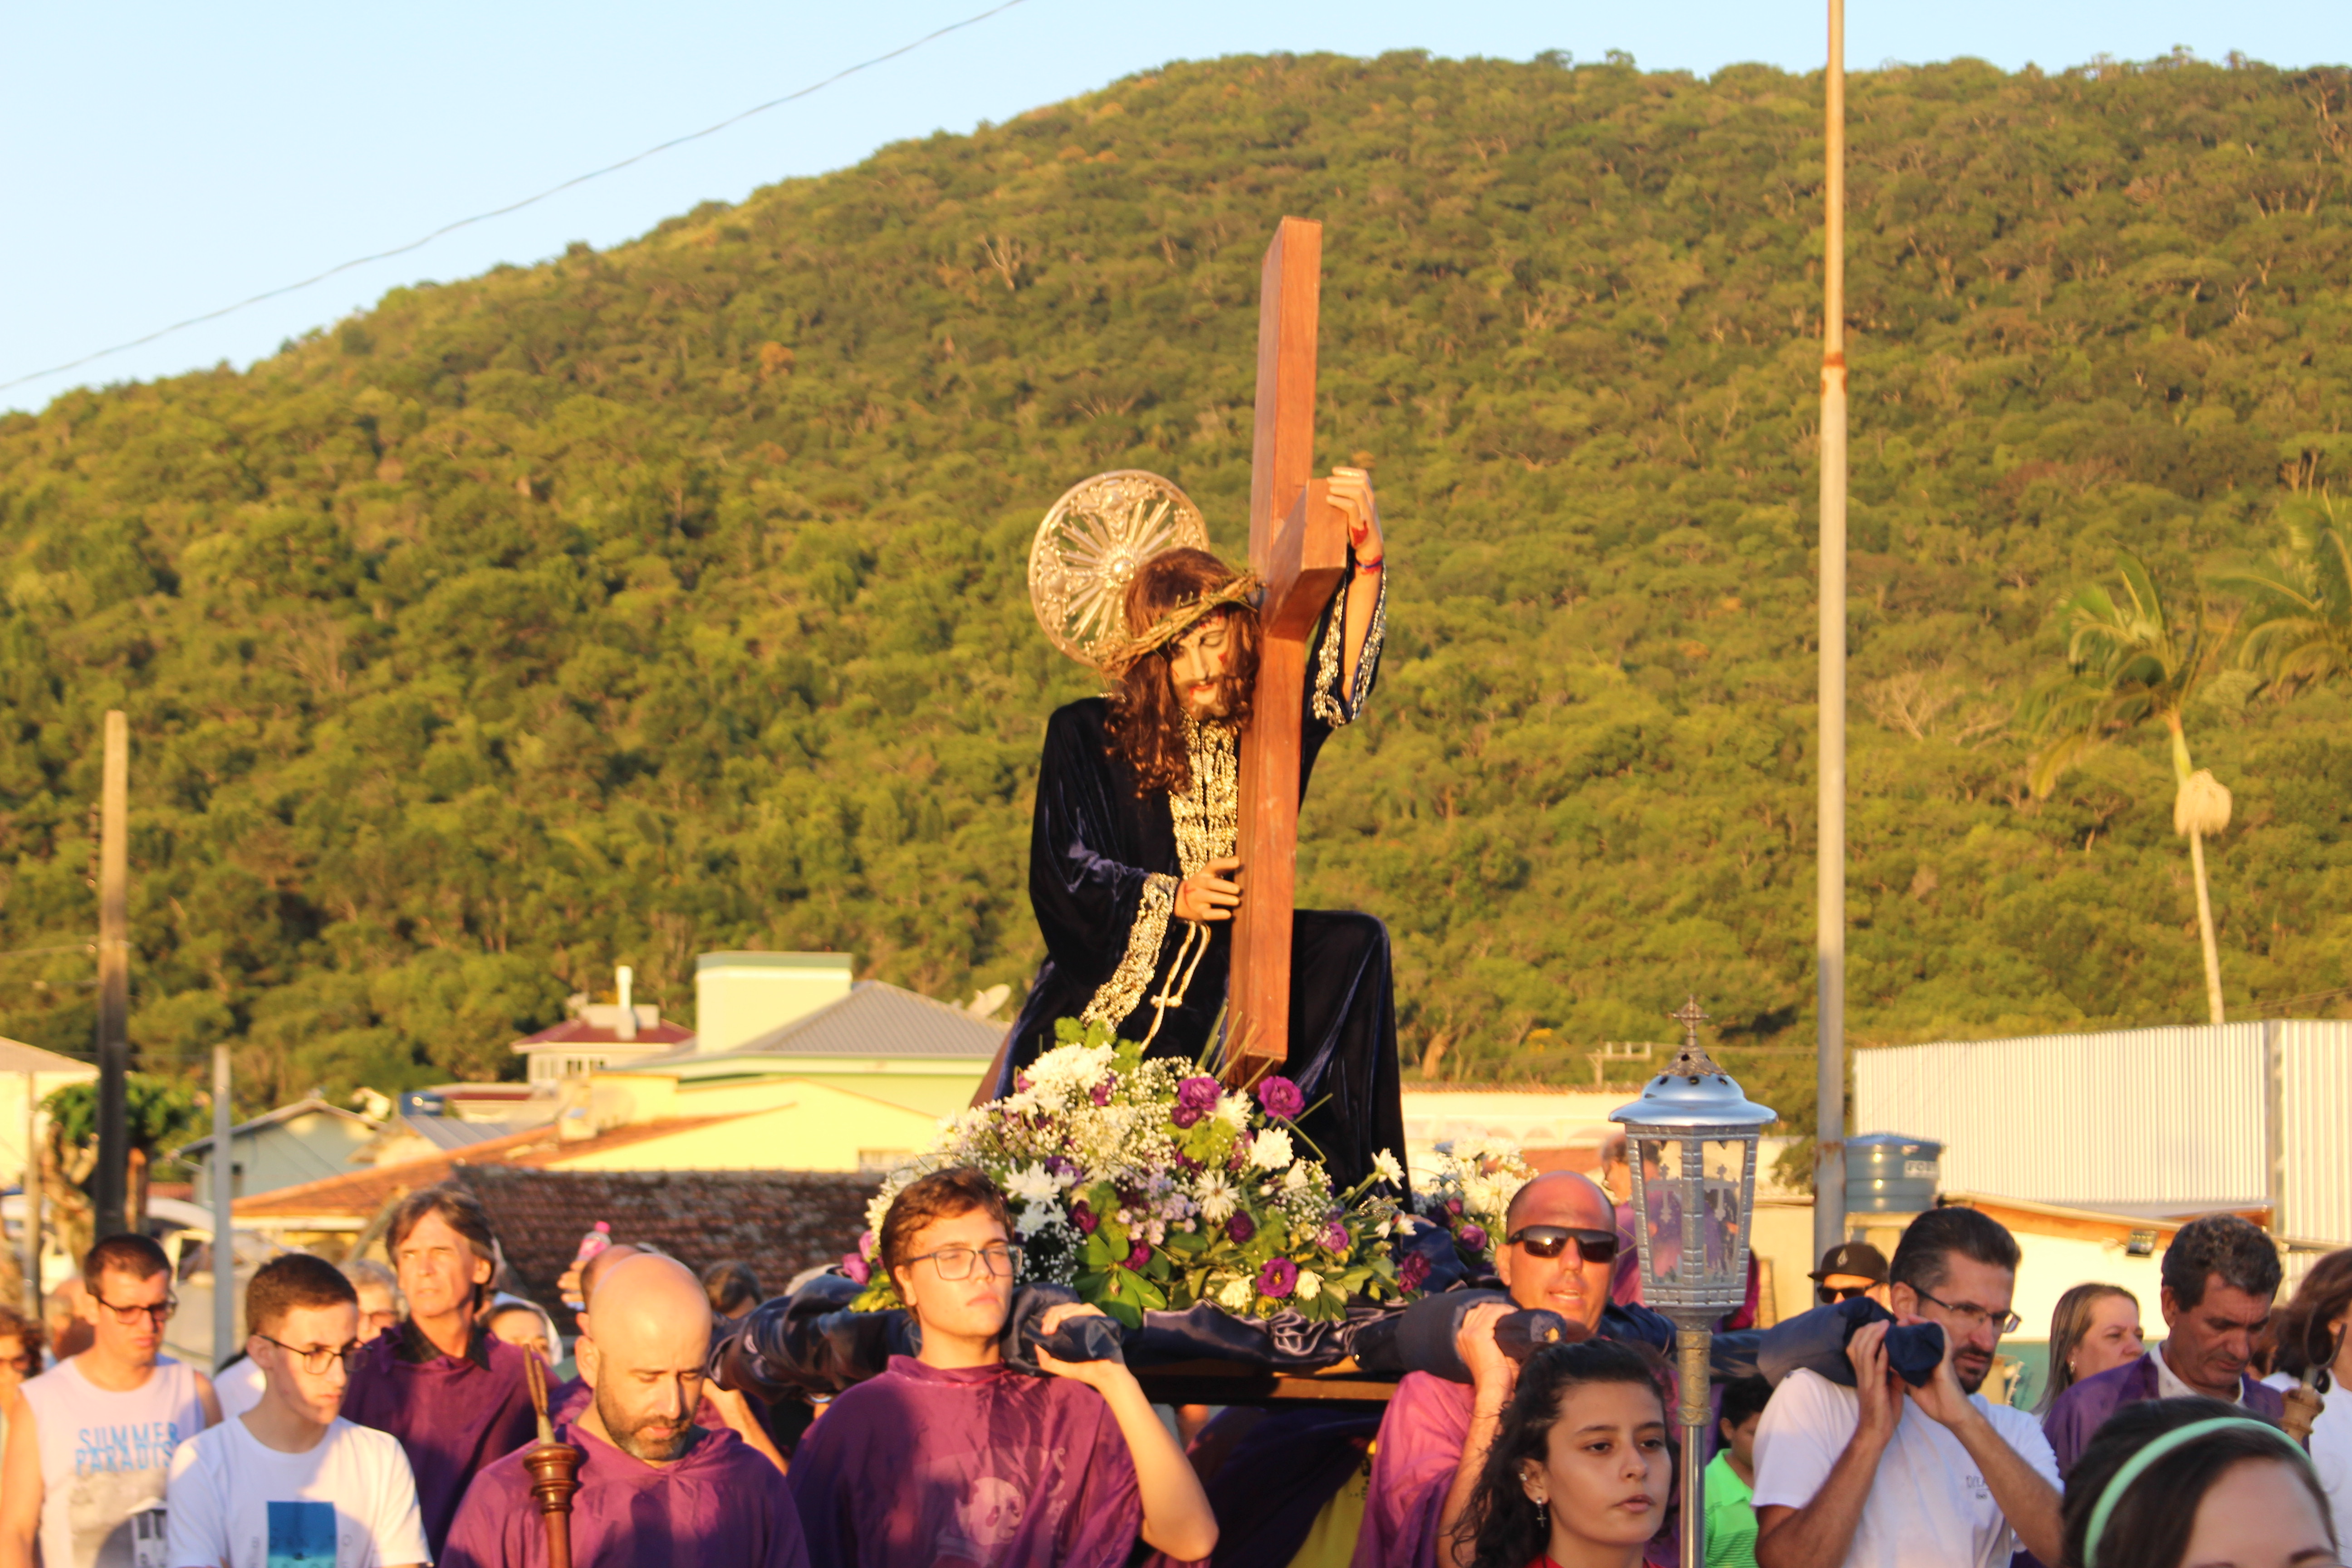 Porto Belo celebra a tradicional Festa de Nosso Senhor dos Passos neste final de semana